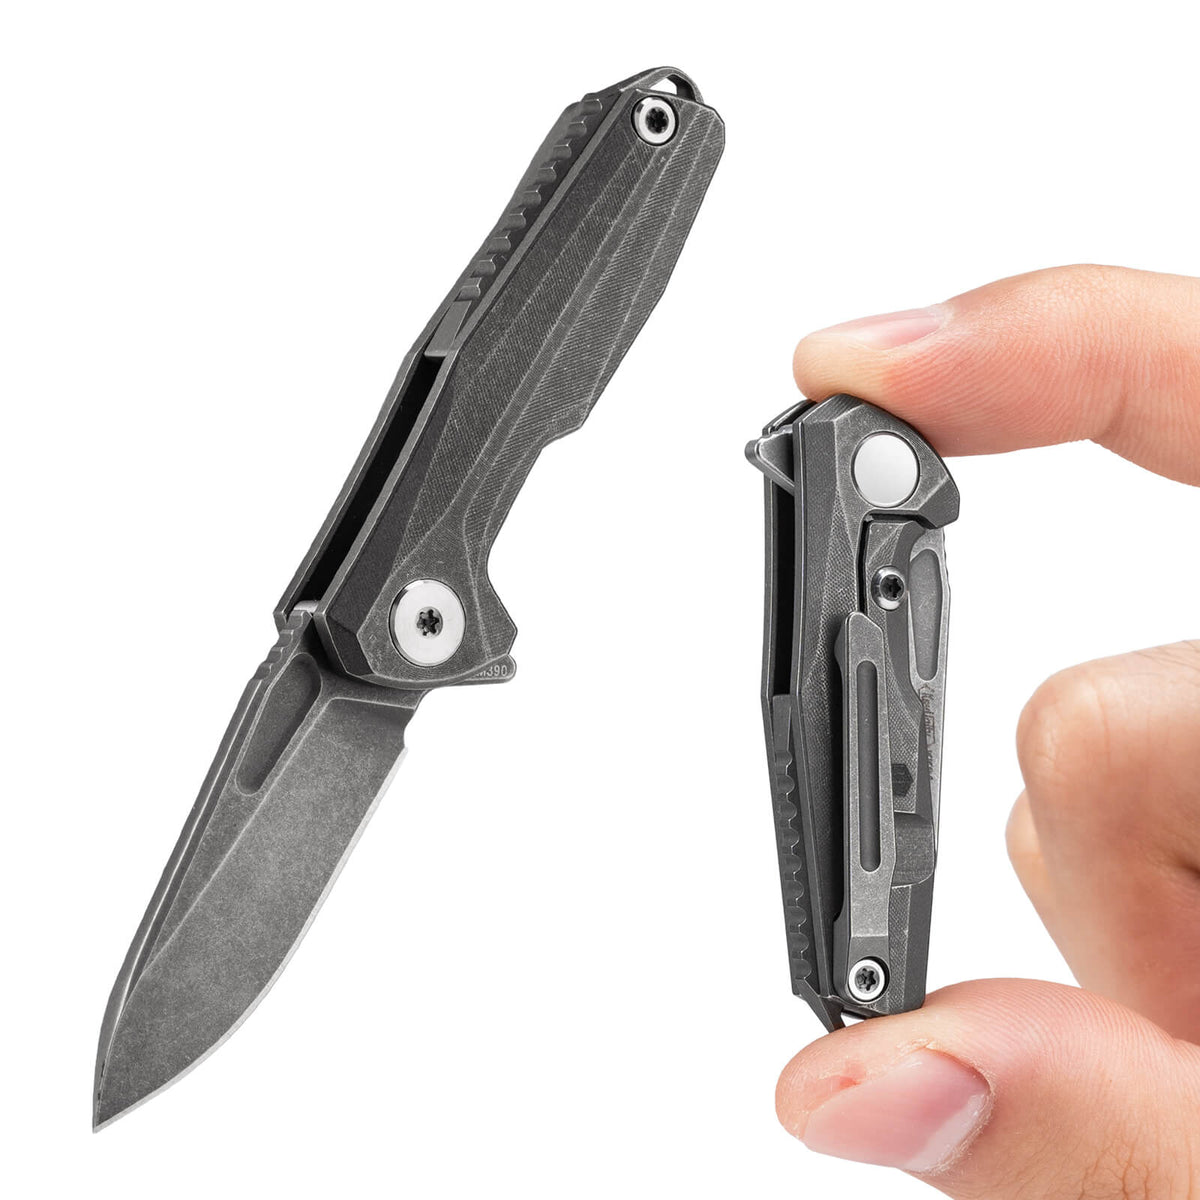 KK04 Mini Folding Knife